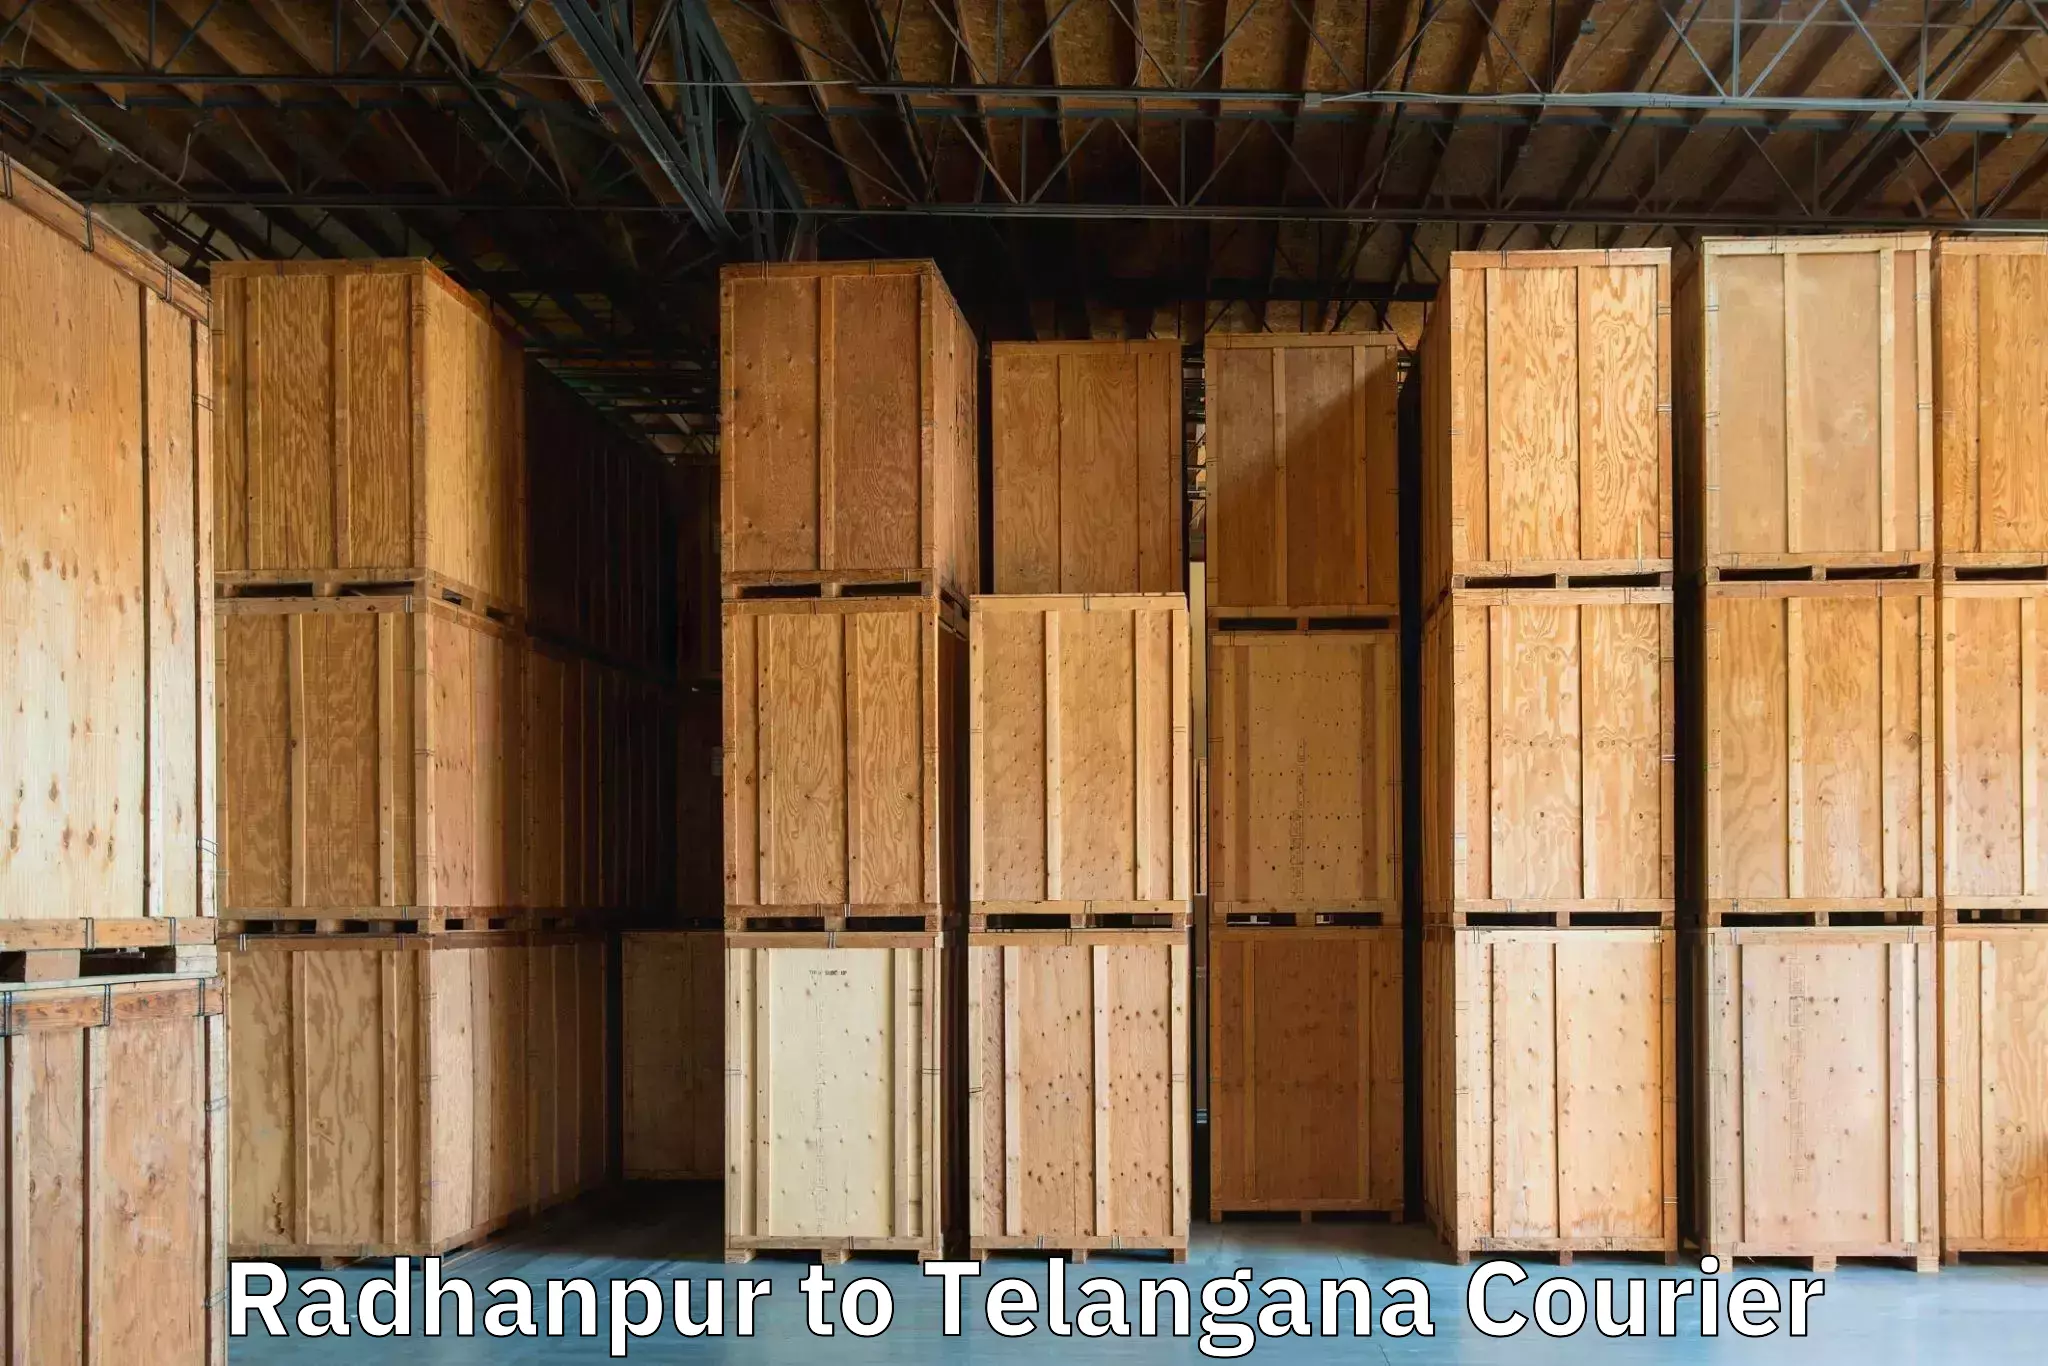 Baggage transport logistics Radhanpur to Danthalapally